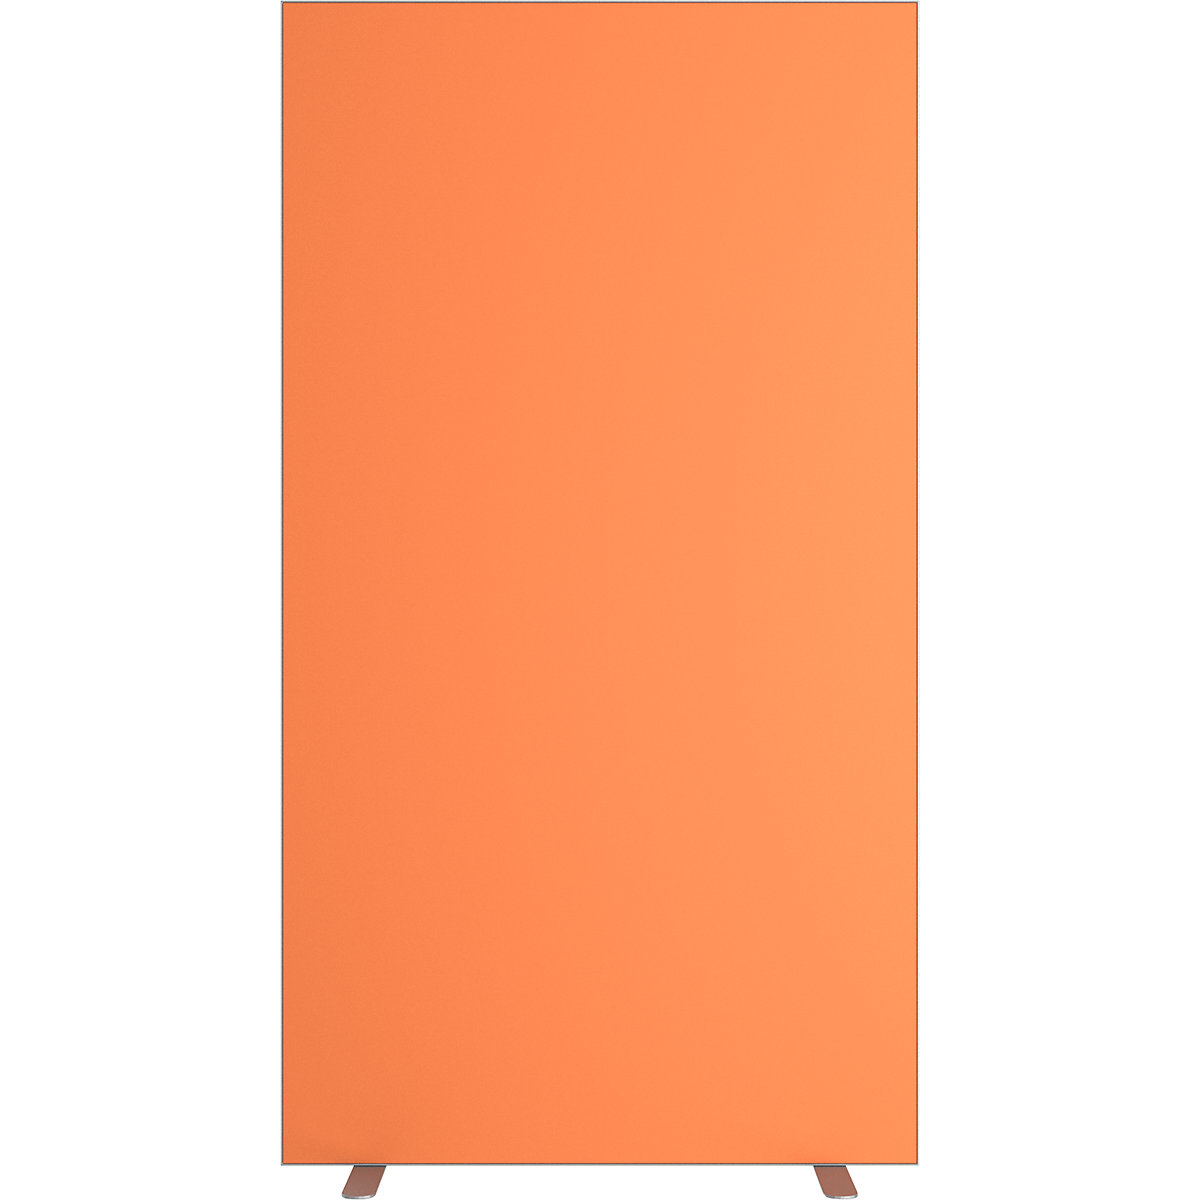 Ścianka działowa easyScreen, jednokolorowa, pomarańczowa, szer. 940 mm-16